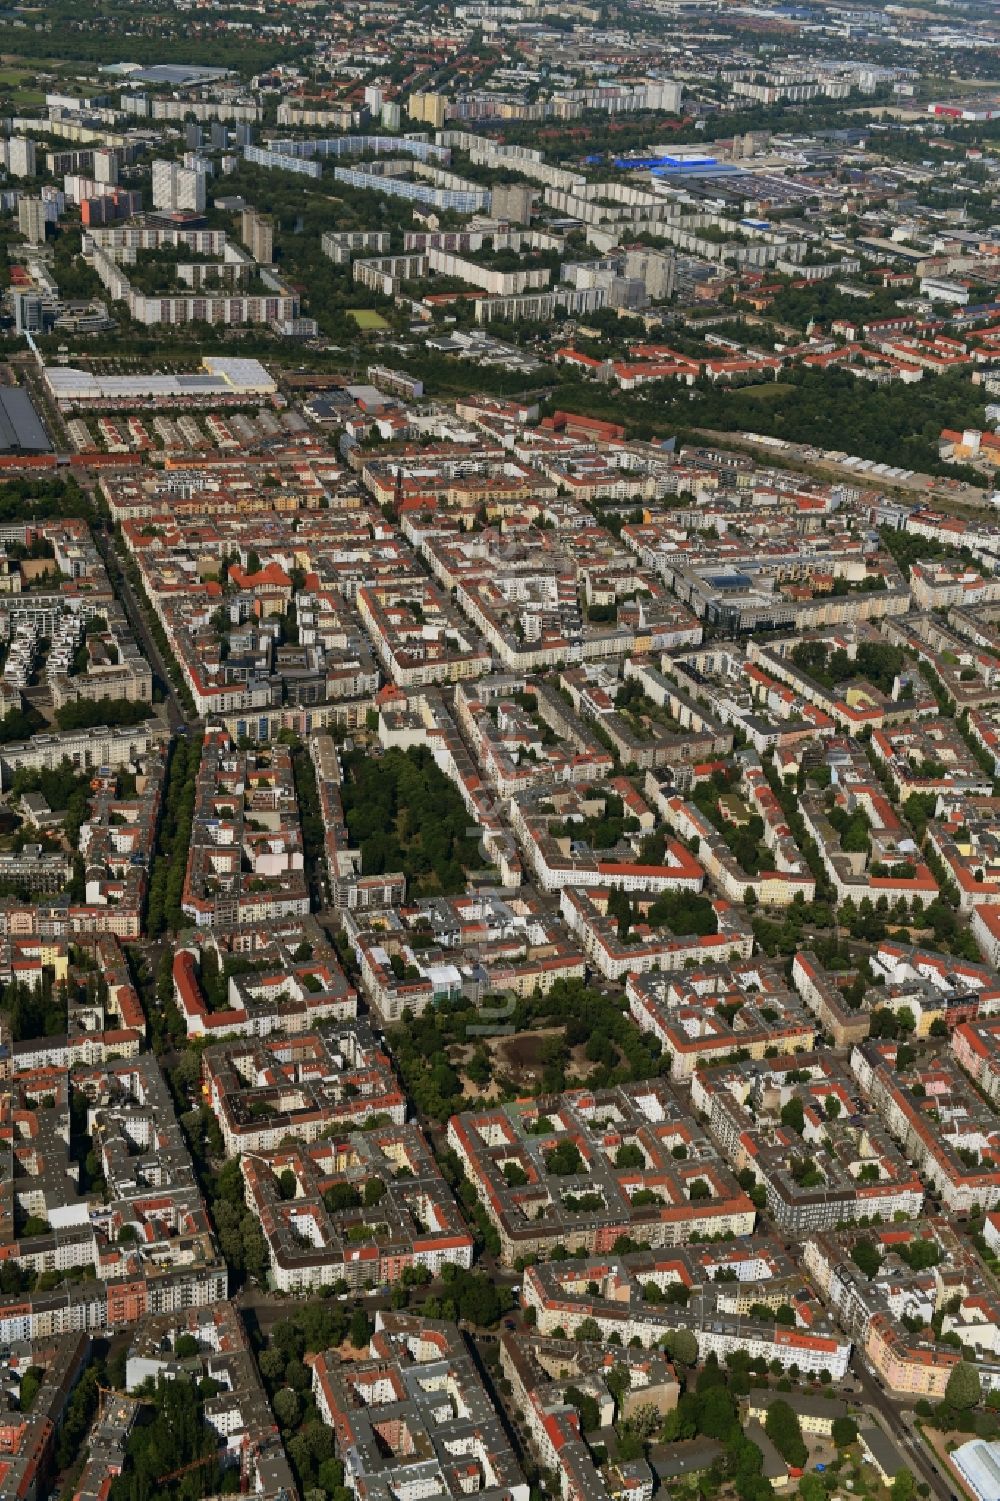 Luftbild Berlin - Wohngebiet der Mehrfamilienhaussiedlung Revaler Straße - Simplonstraße - Grünberger Straße - Boxhagener Platz im Ortsteil Friedrichshain in Berlin, Deutschland